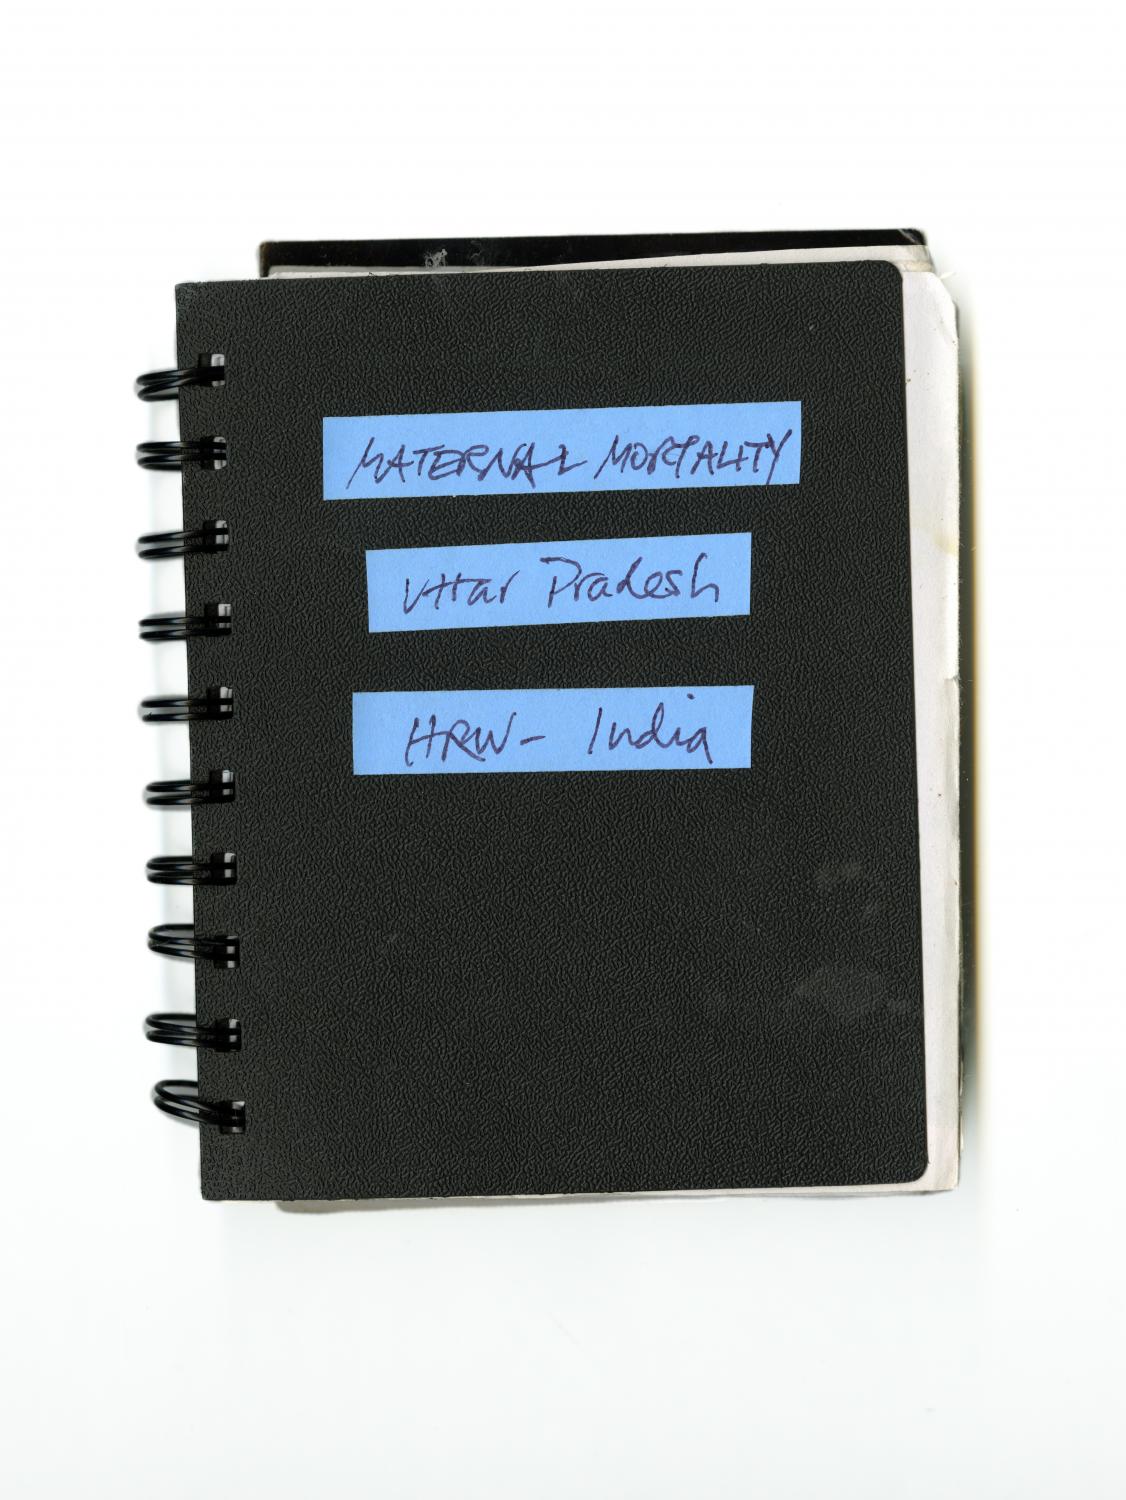 Notebook, 2009.